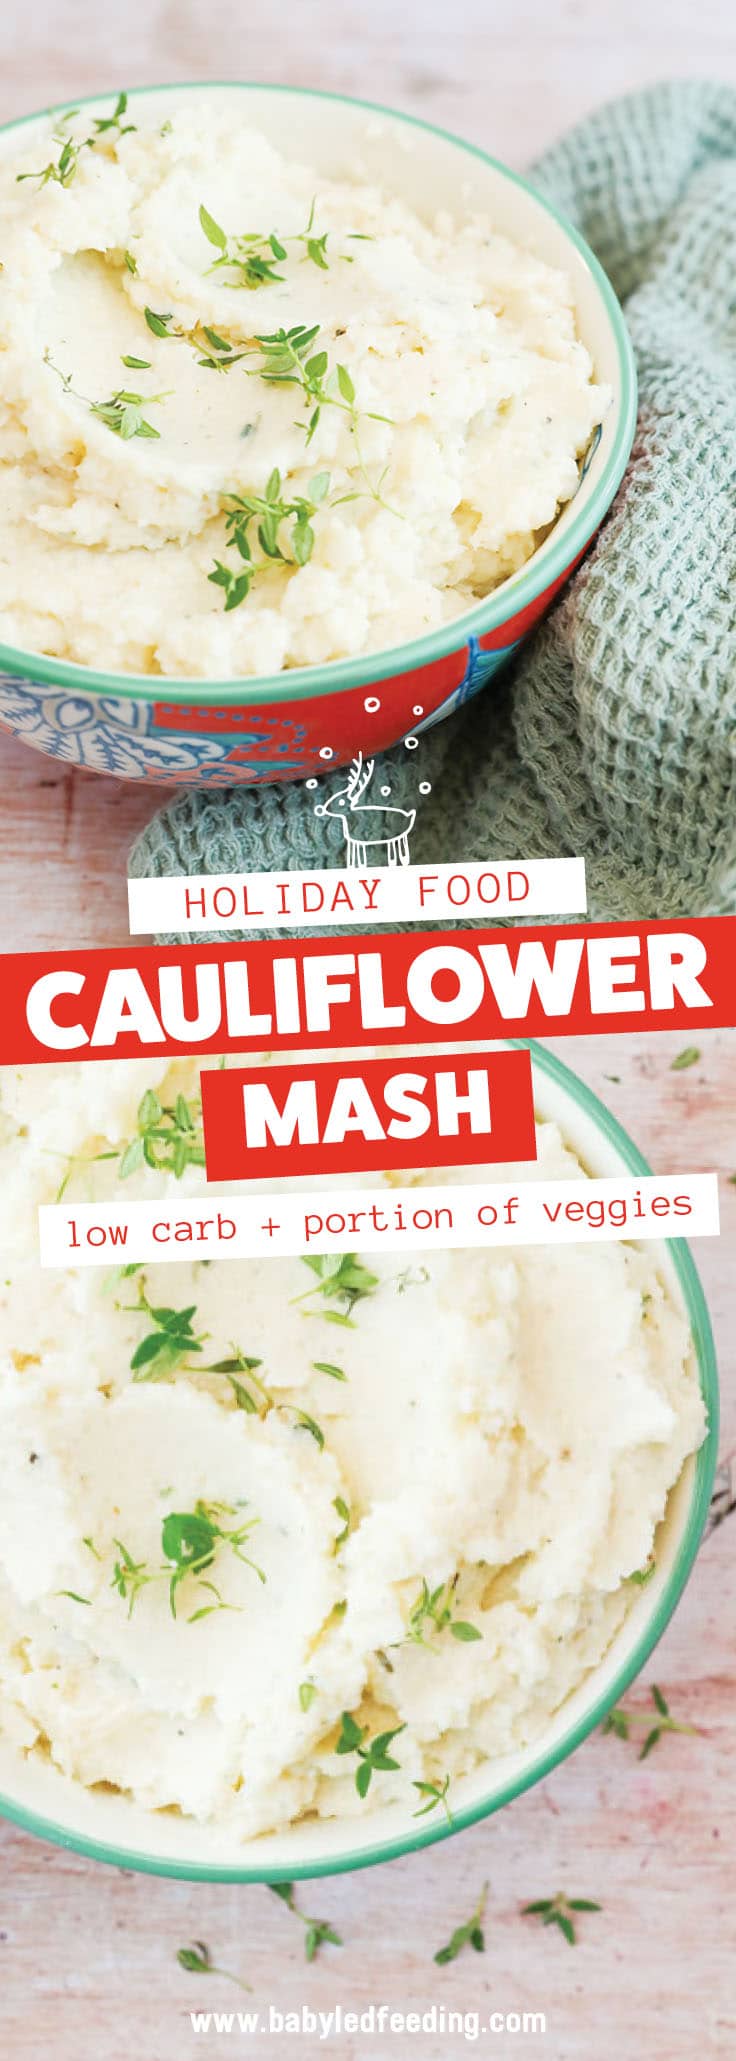 Baby Led Feeding Low Carb Cauliflower Mash Pinterest Image